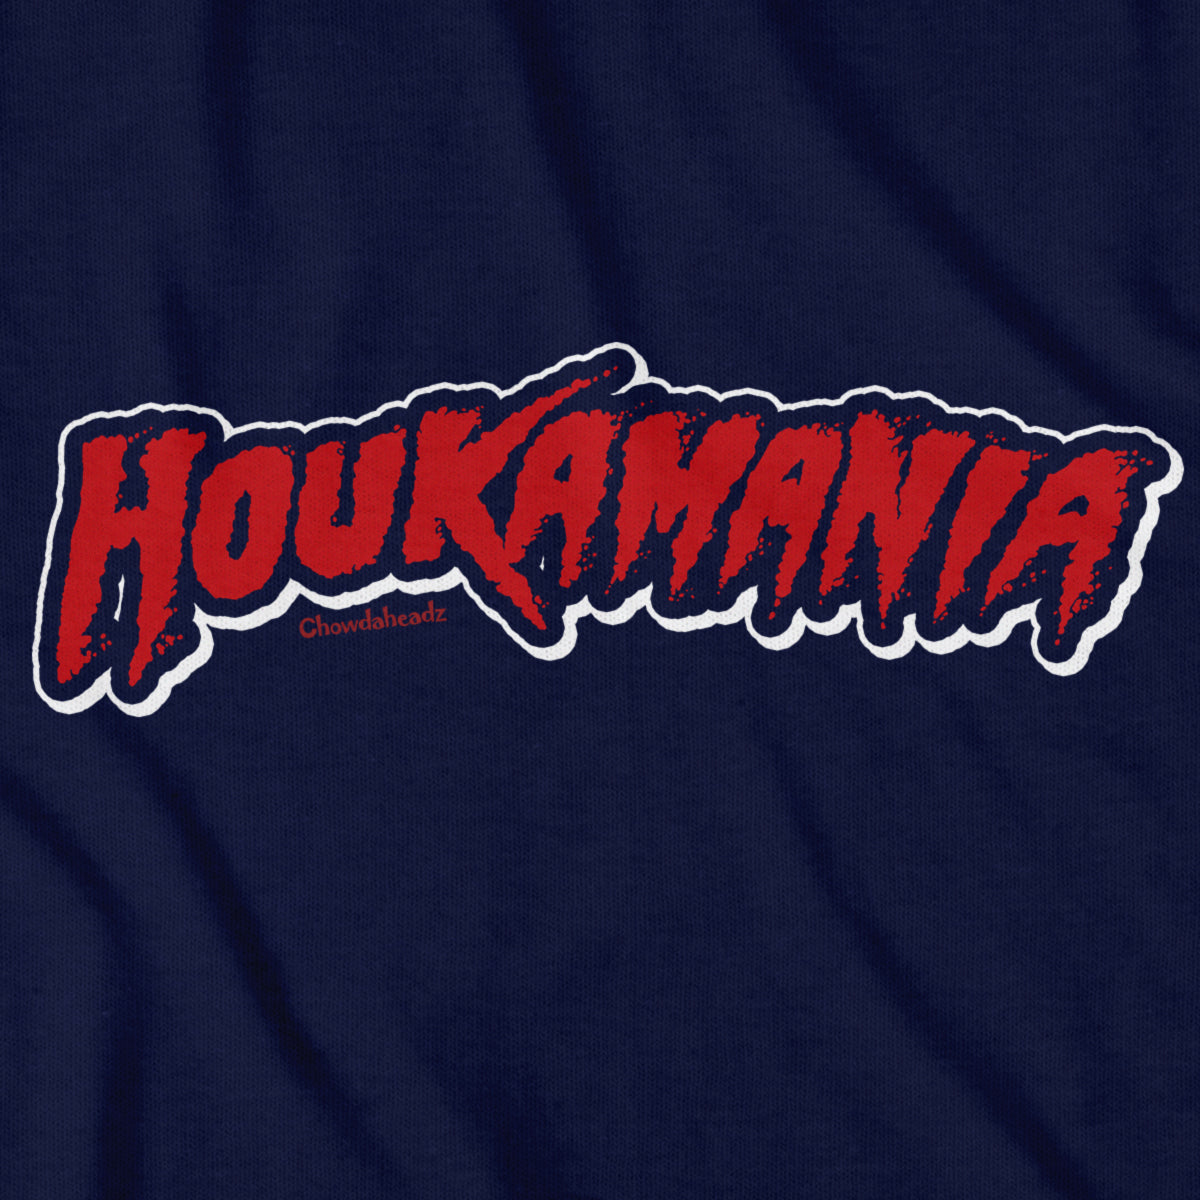 Houkamania Boston Youth Hoodie - Chowdaheadz